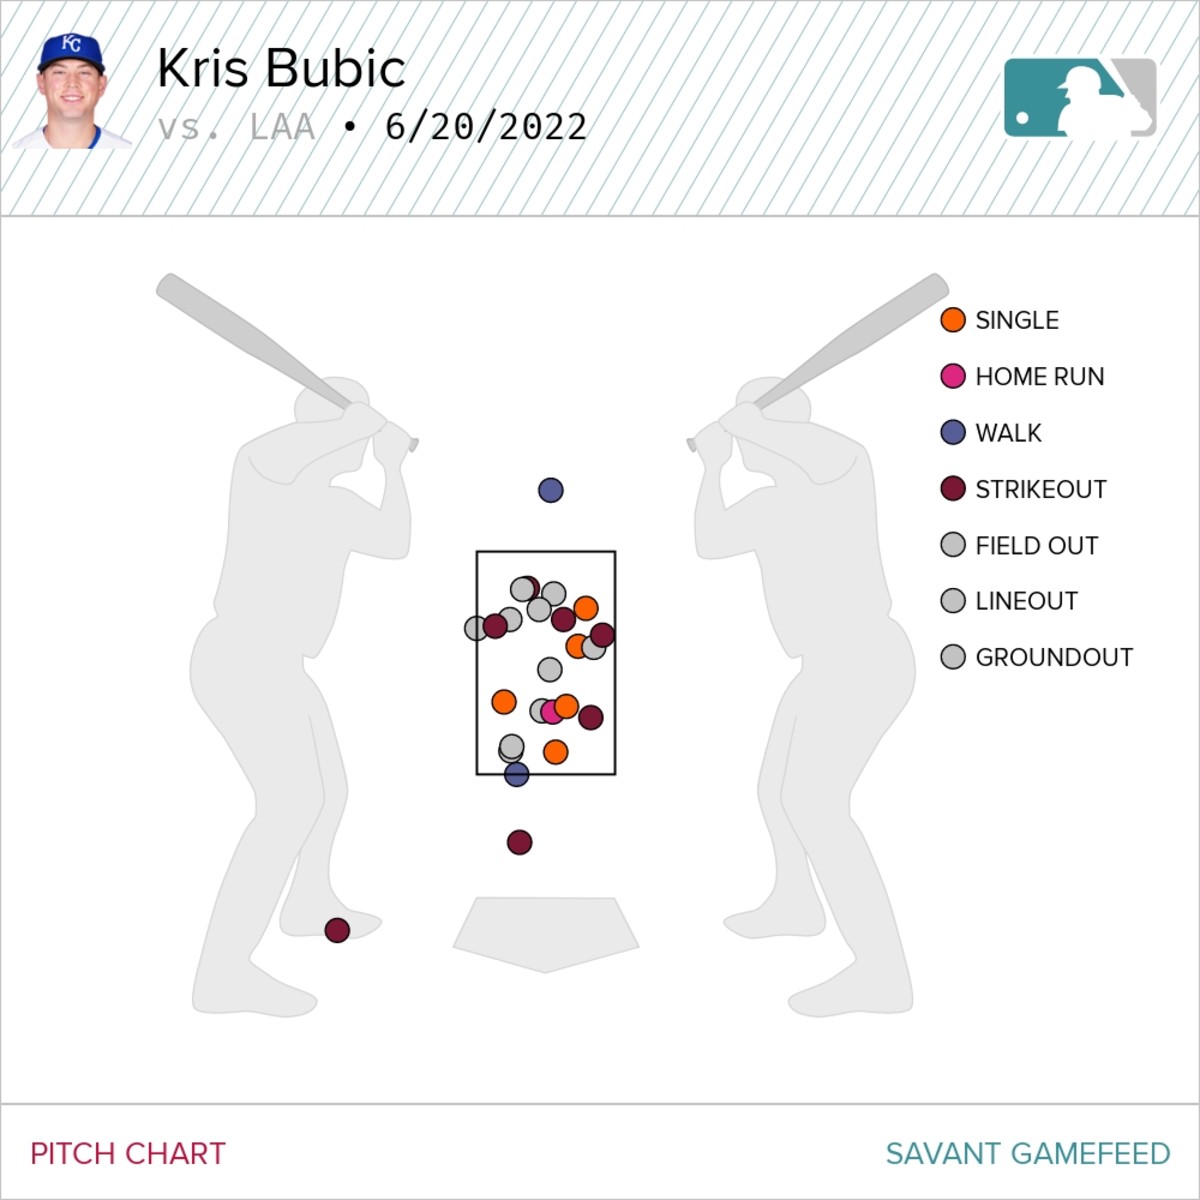 Kris Bubic's pitch chart 6/20/22, via Baseball Savant.